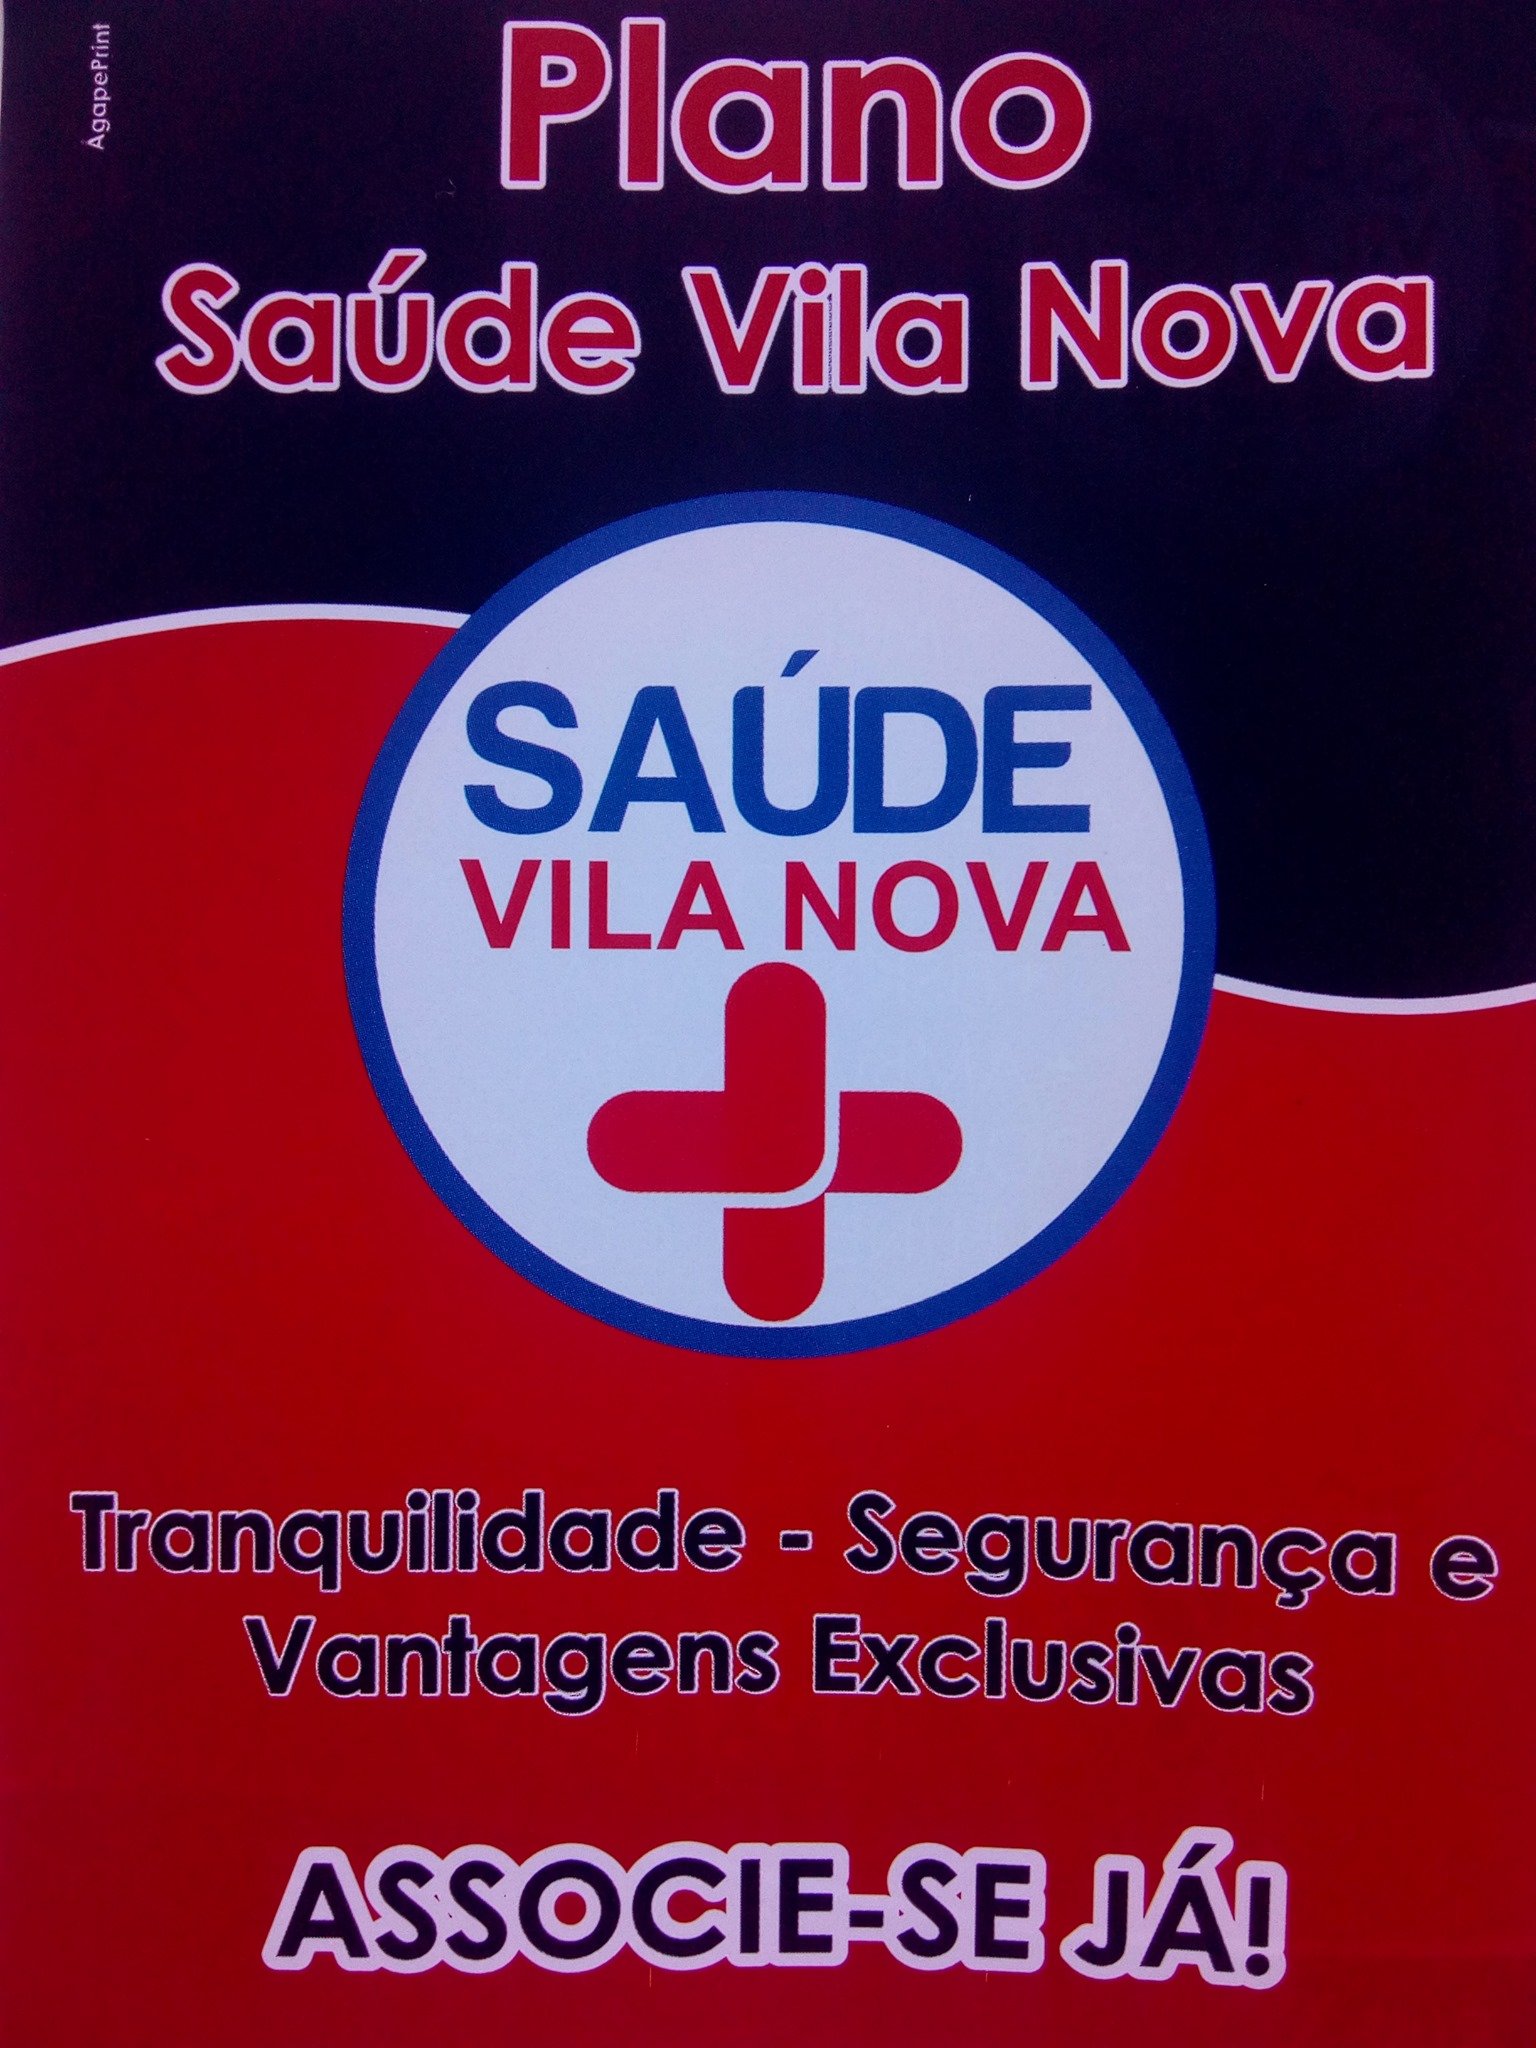 Plano de saúde Vila Nova